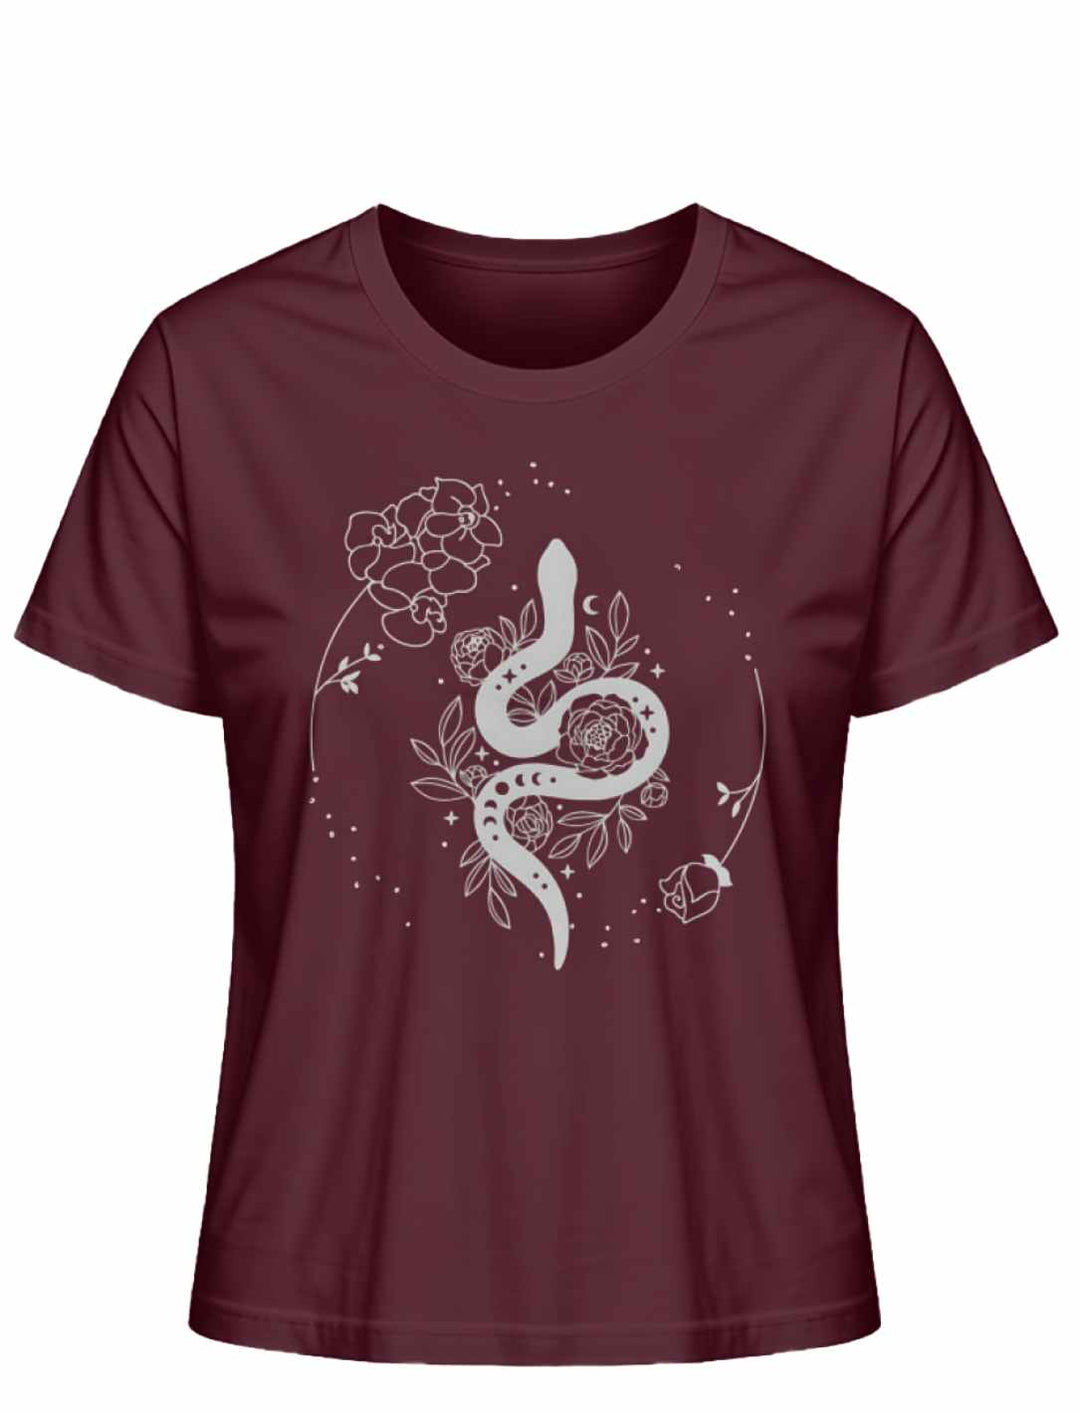 Snake of Wisdom T-Shirt in Burgund auf weißem Hintergrund, betont die Kraft und Leidenschaft der Schlange, umgeben von einem Kreis aus Sternen und Blumen.